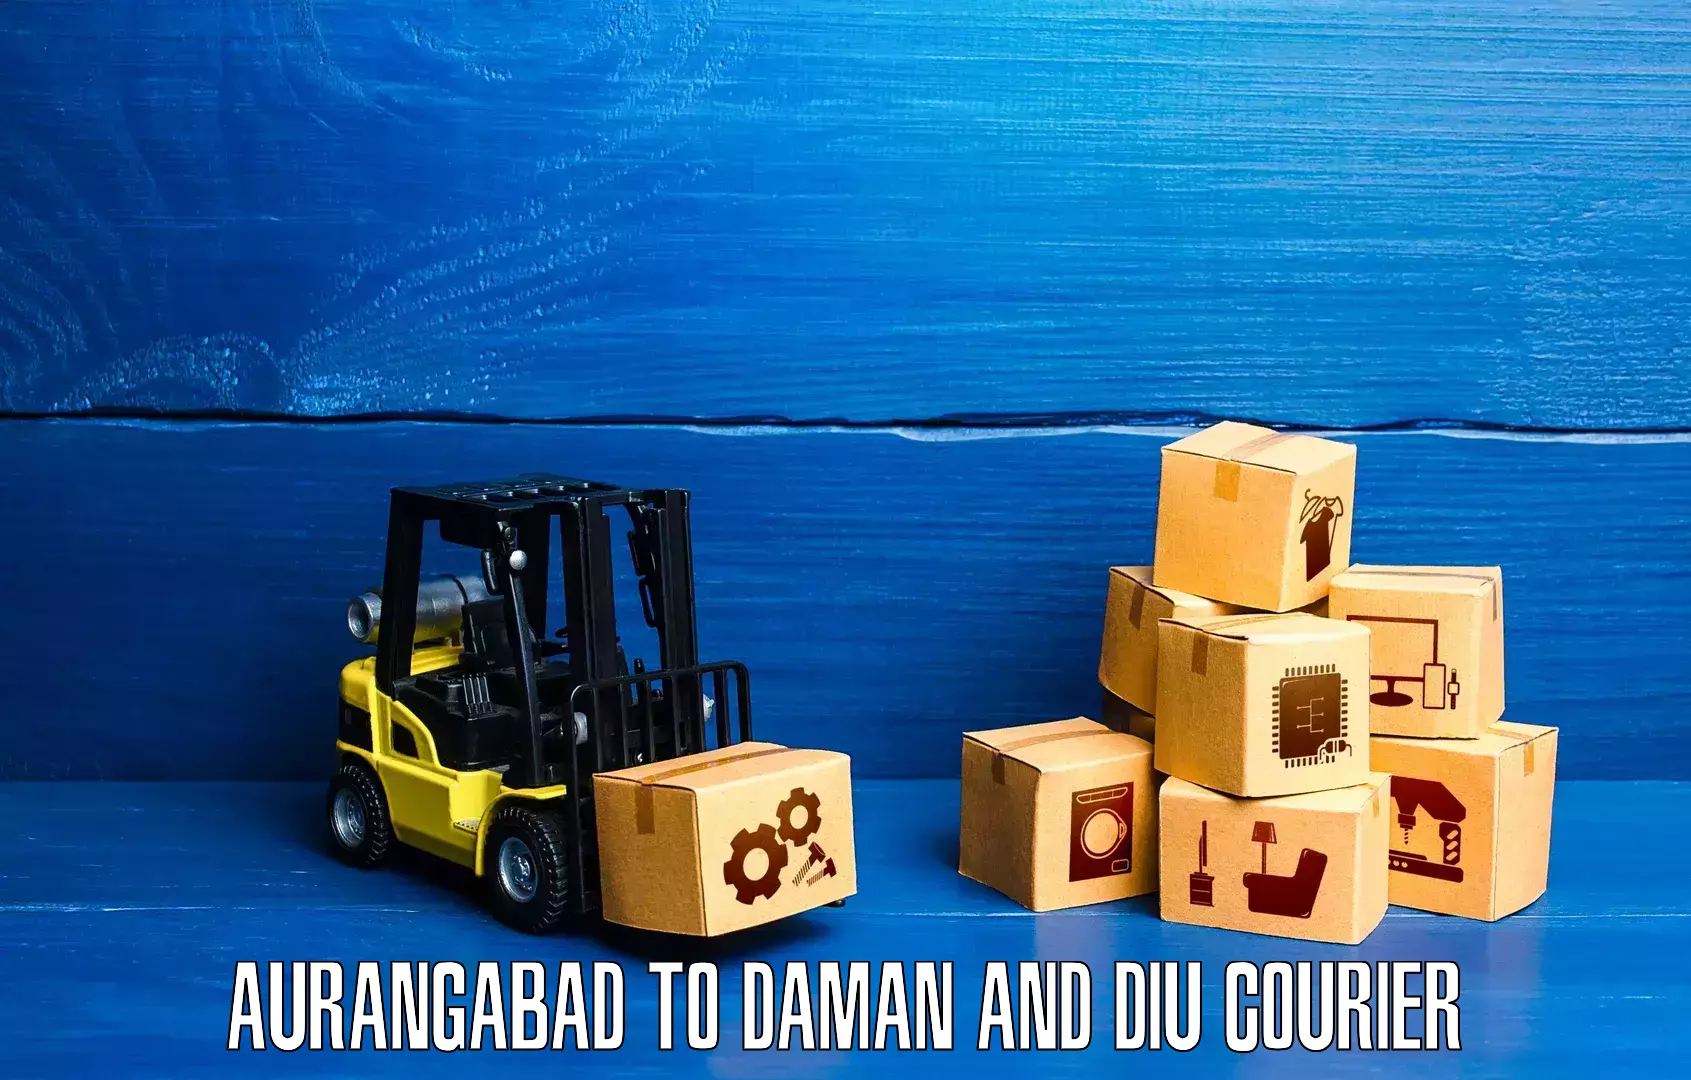 Global logistics network Aurangabad to Daman and Diu